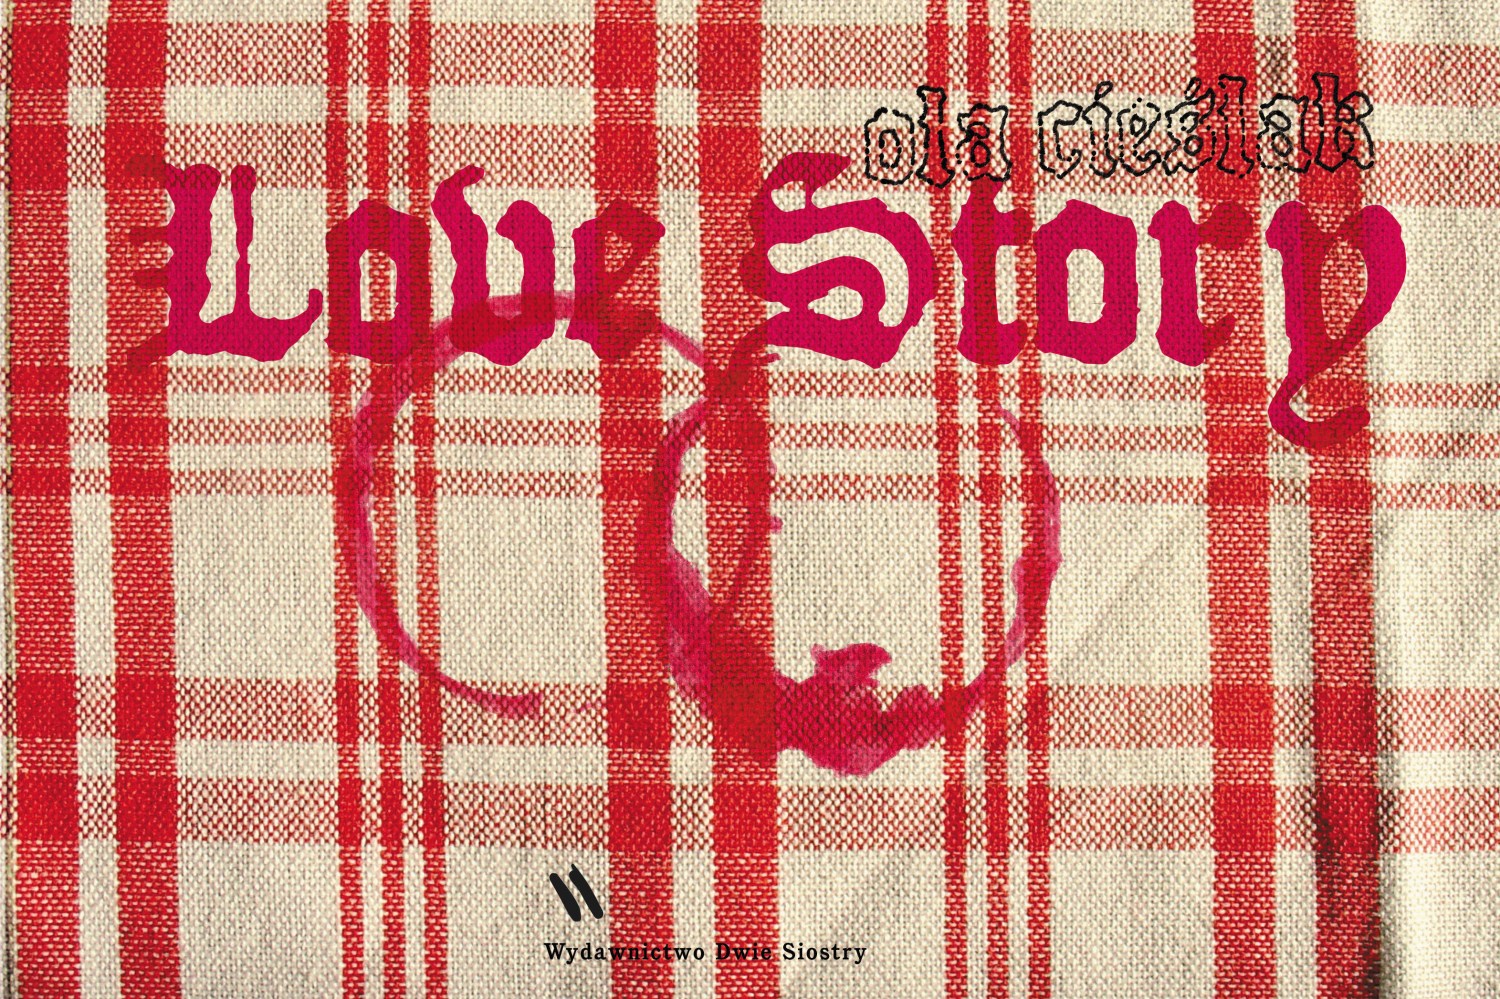 Okładka książki "Love Story", tekst i ilustracje: Aleksandra Cieślak, fot. wydawnictwo Dwie Siostry